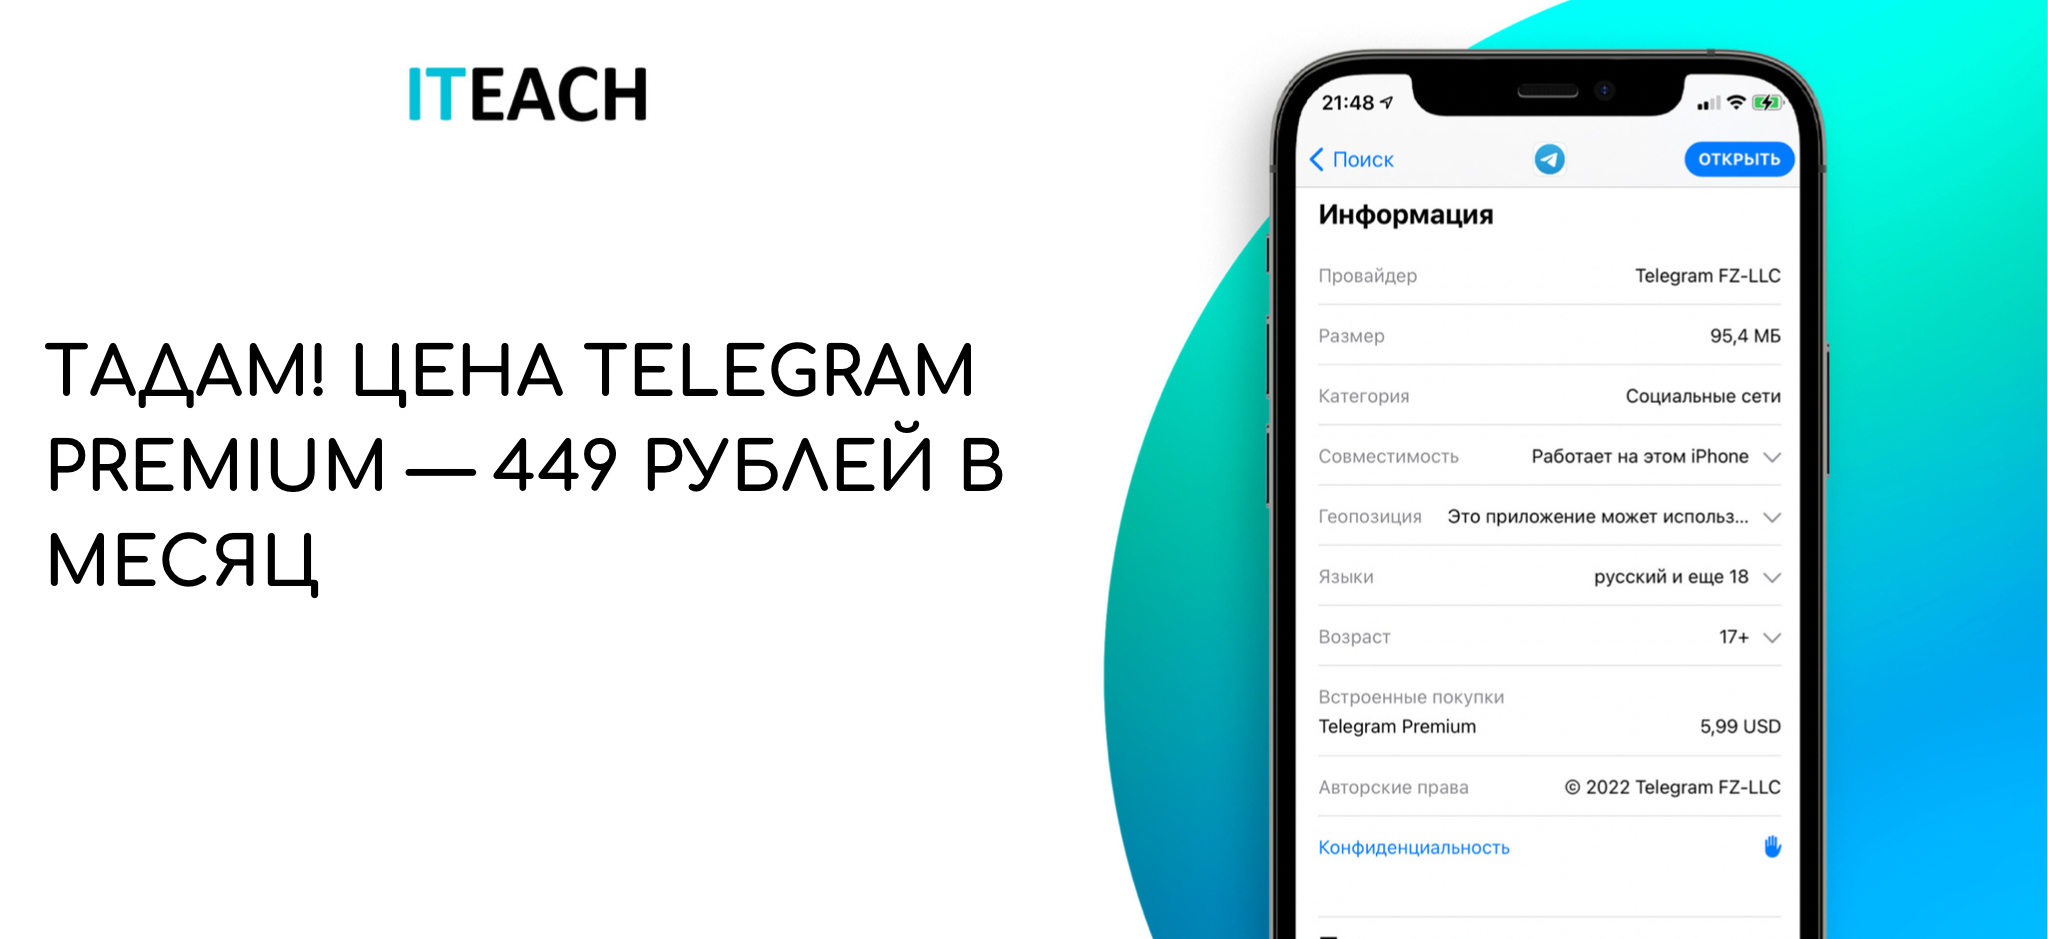 Скачать телеграмм премиум бесплатно на андроид на русском последняя версия фото 115